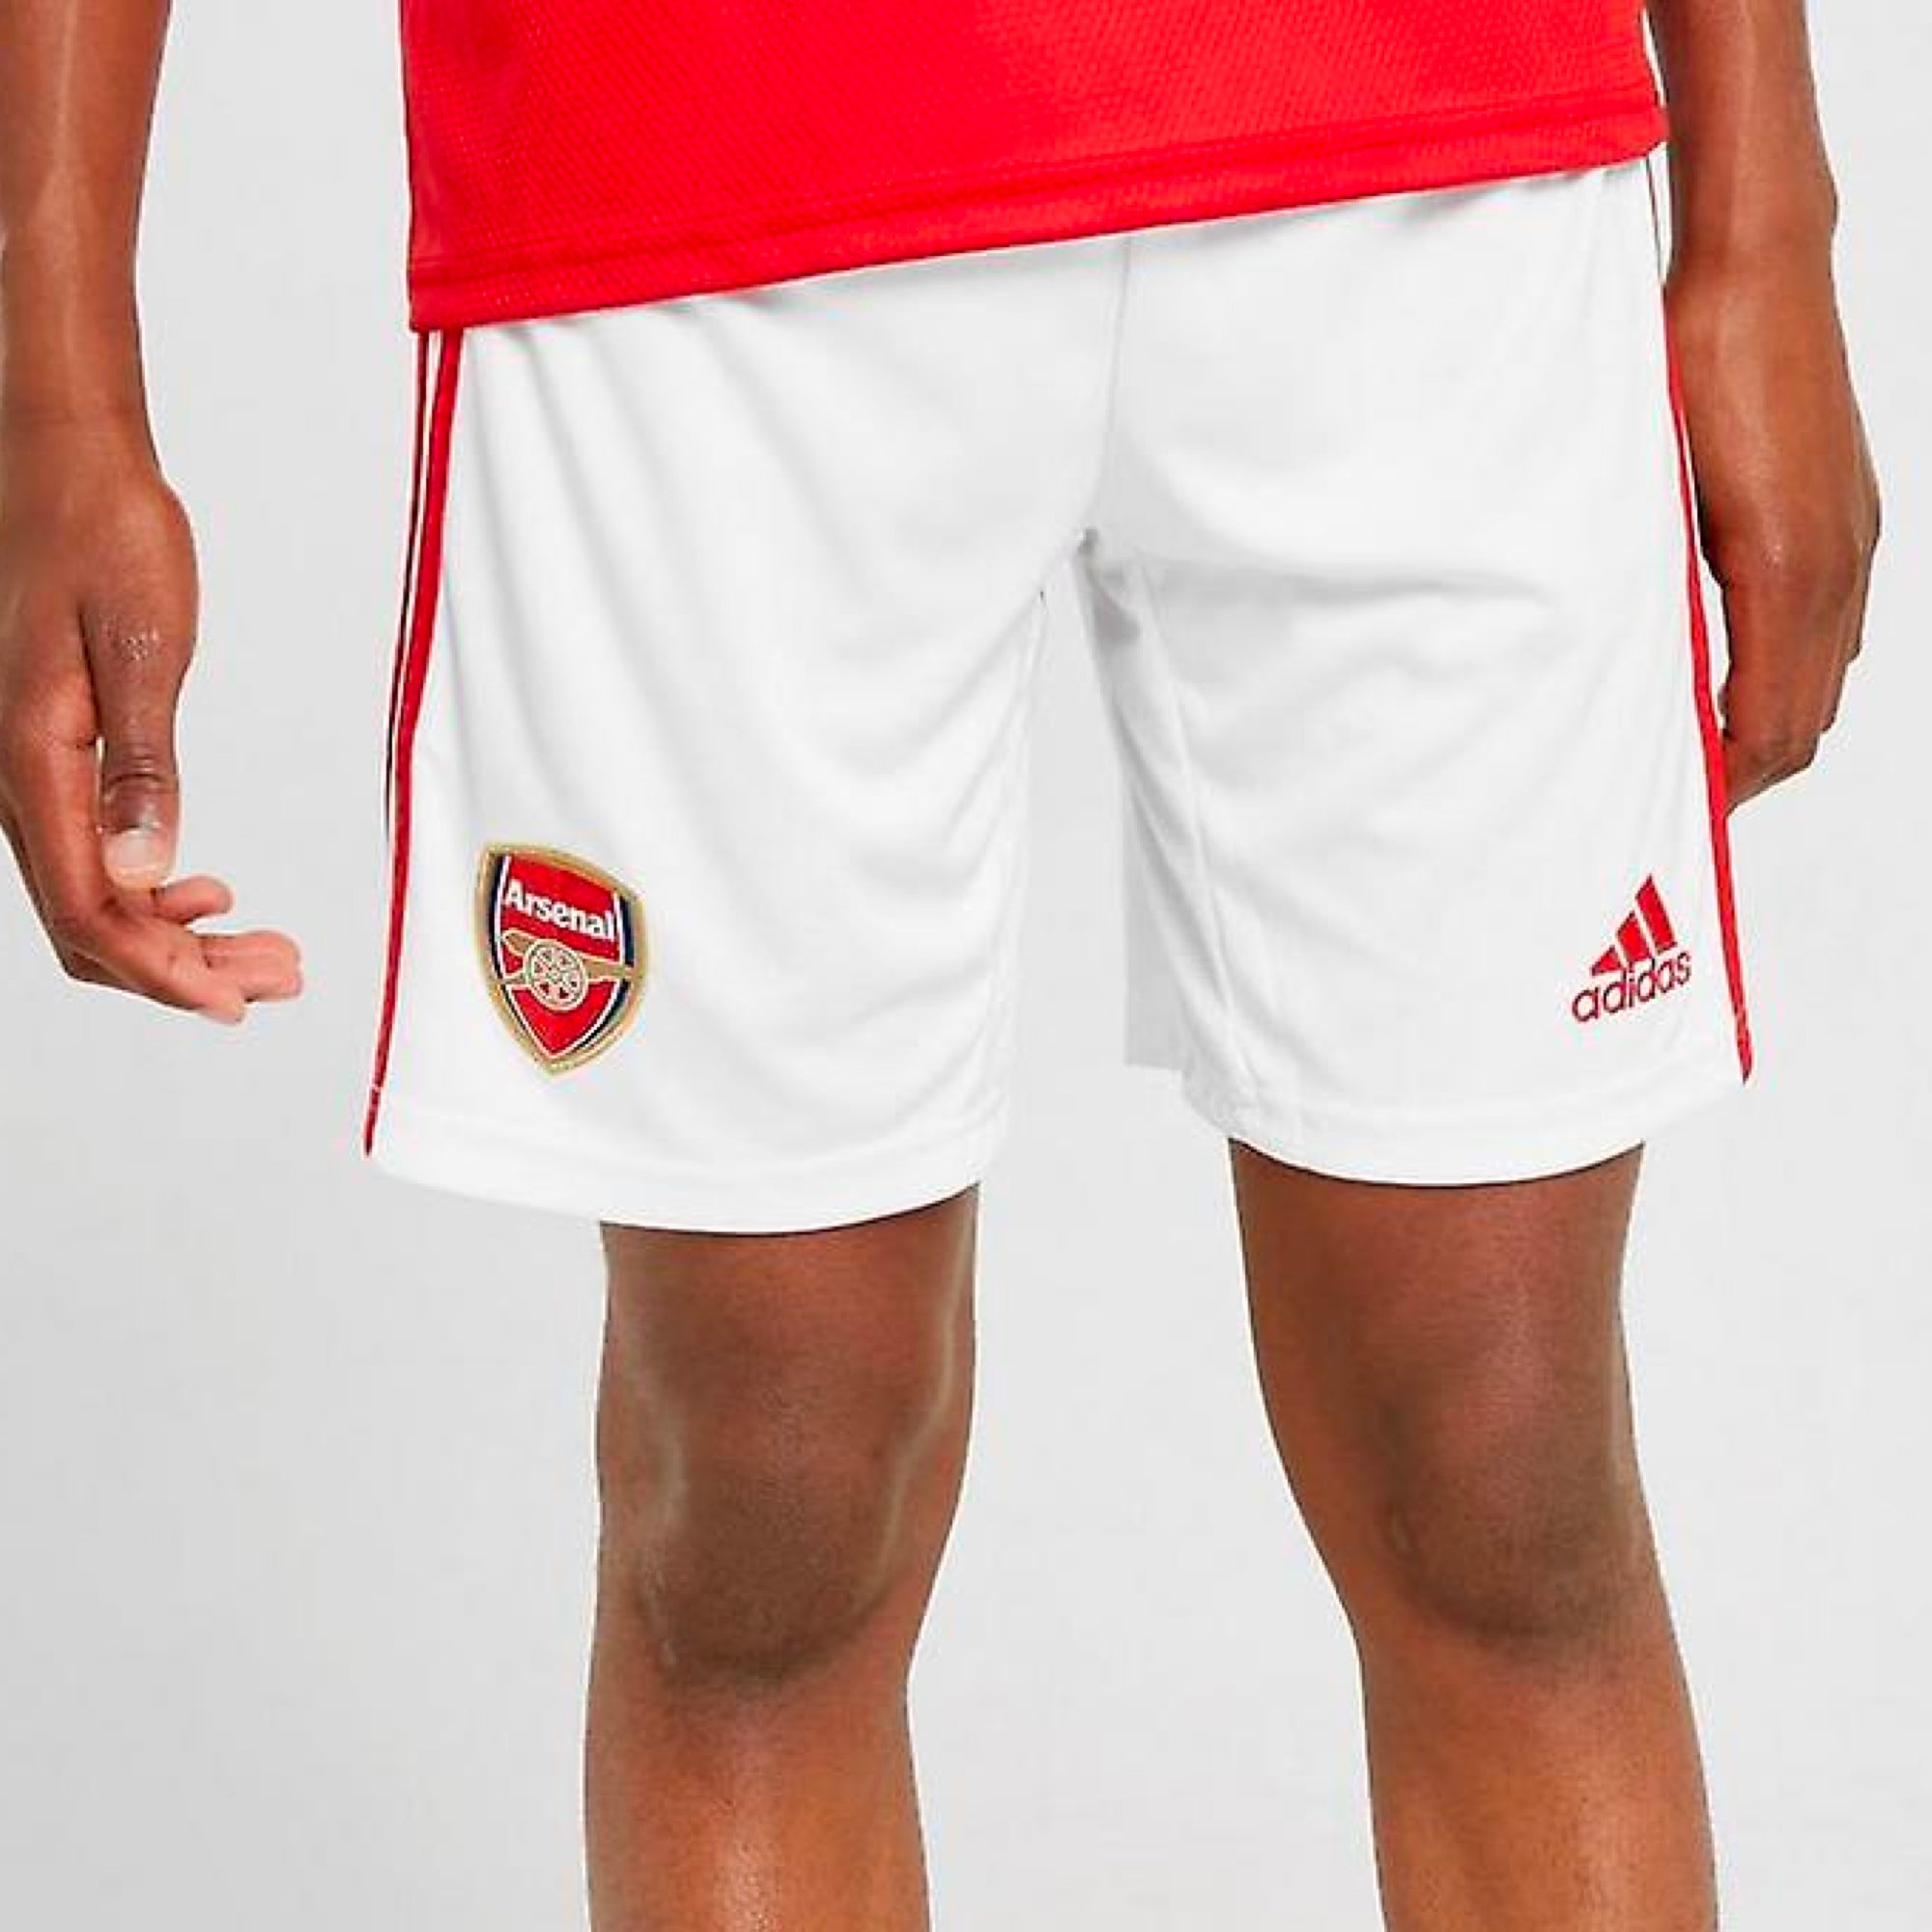 arsenal shorts